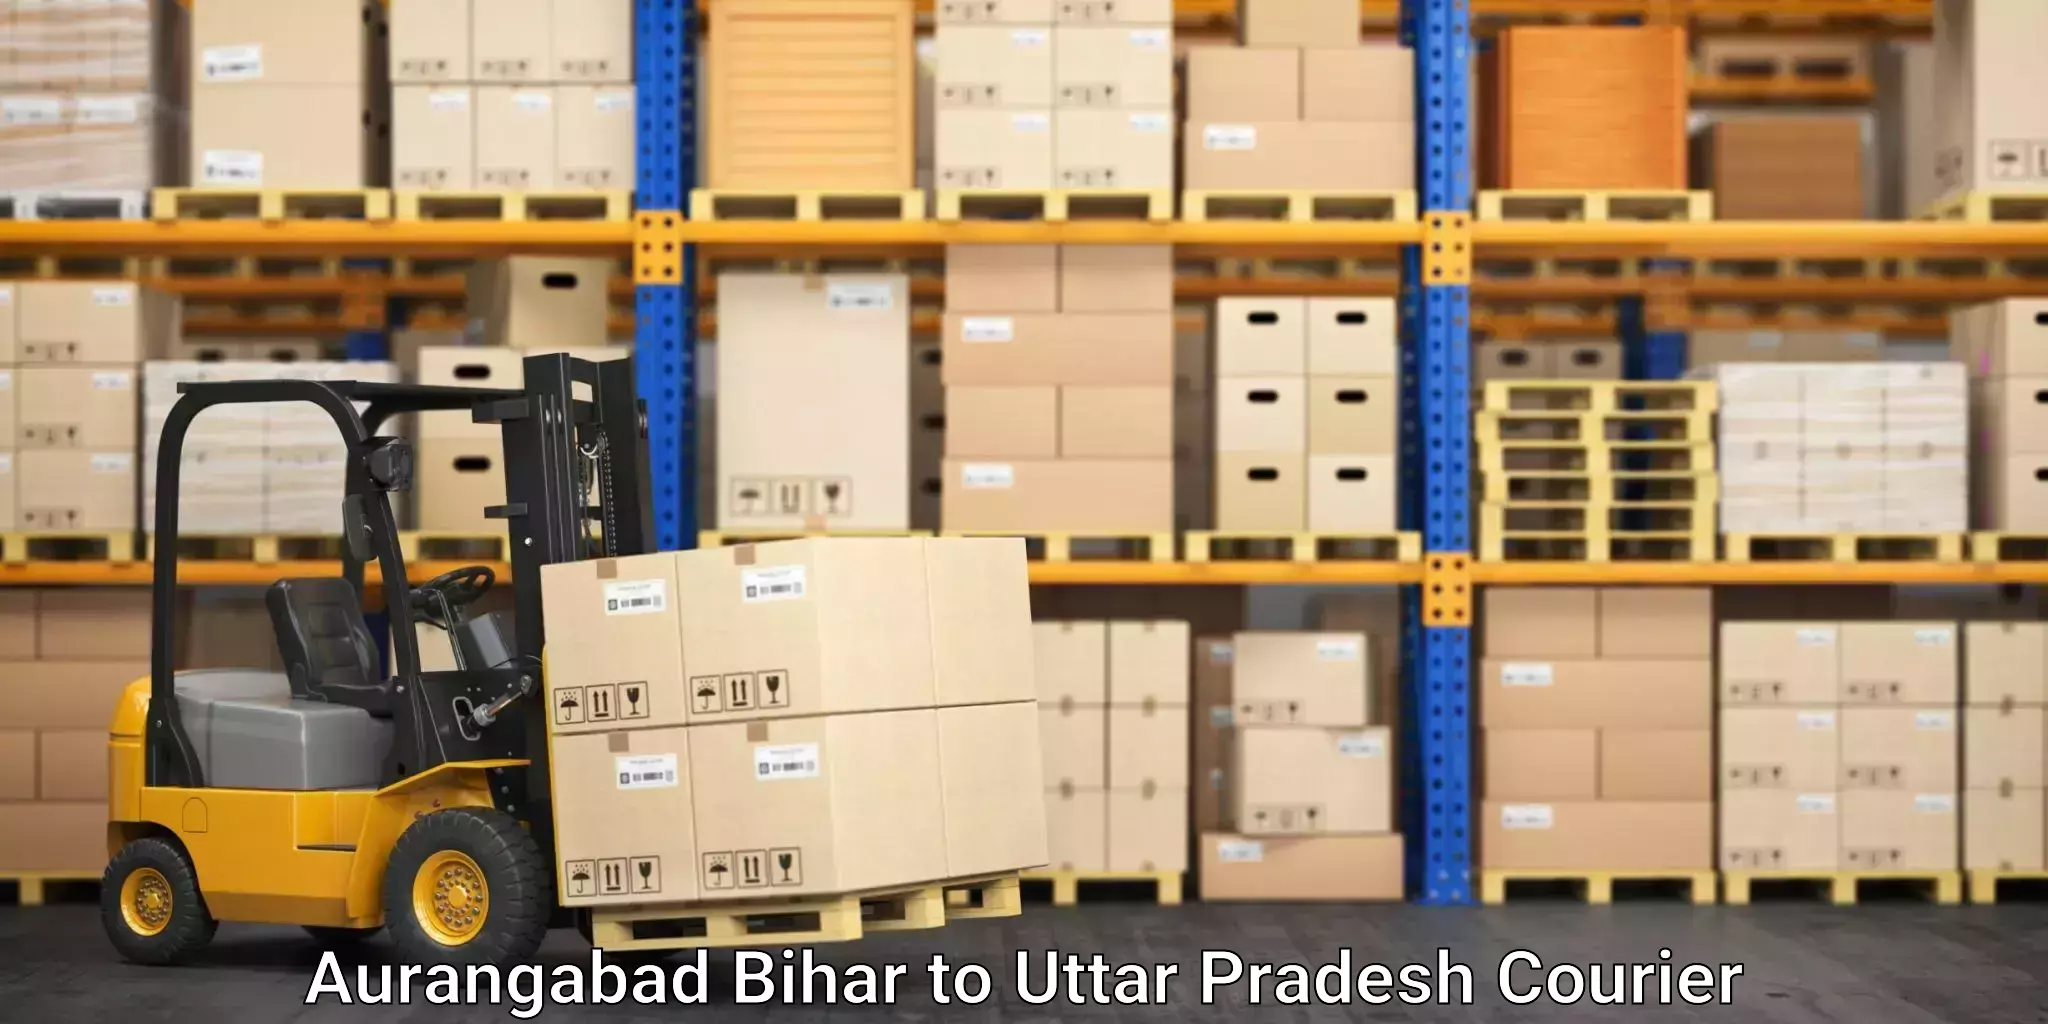 Furniture relocation experts Aurangabad Bihar to IIIT Lucknow